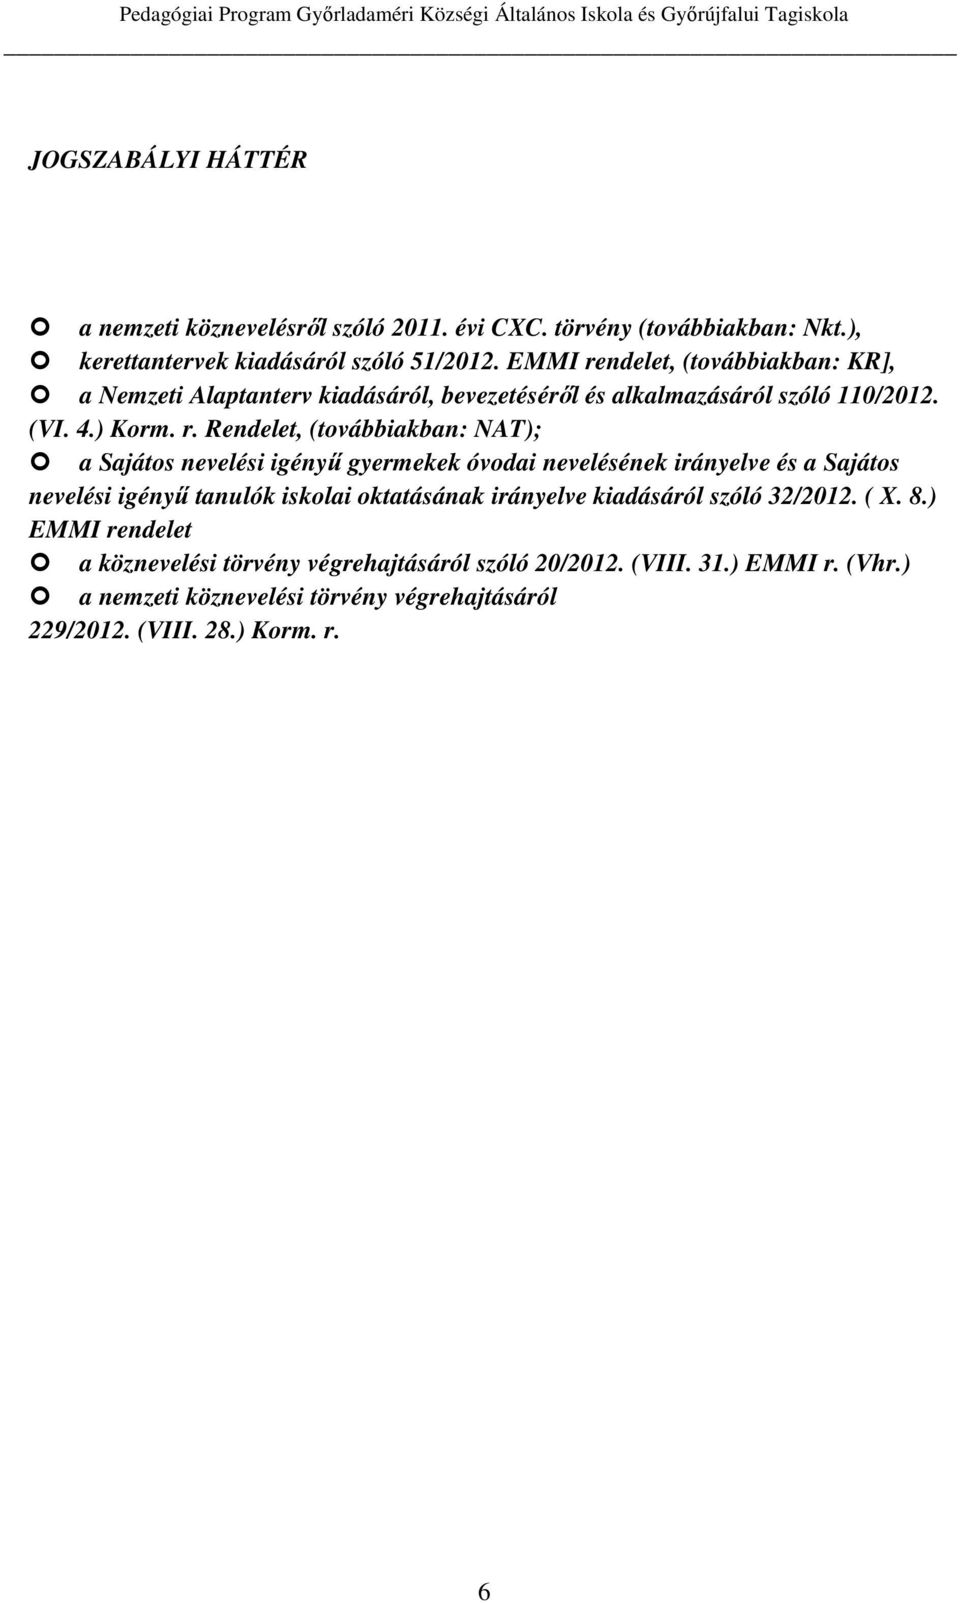 ndelet, (továbbiakban: KR], a Nemzeti Alaptanterv kiadásáról, bevezetéséről és alkalmazásáról szóló 110/2012. (VI. 4.) Korm. r.